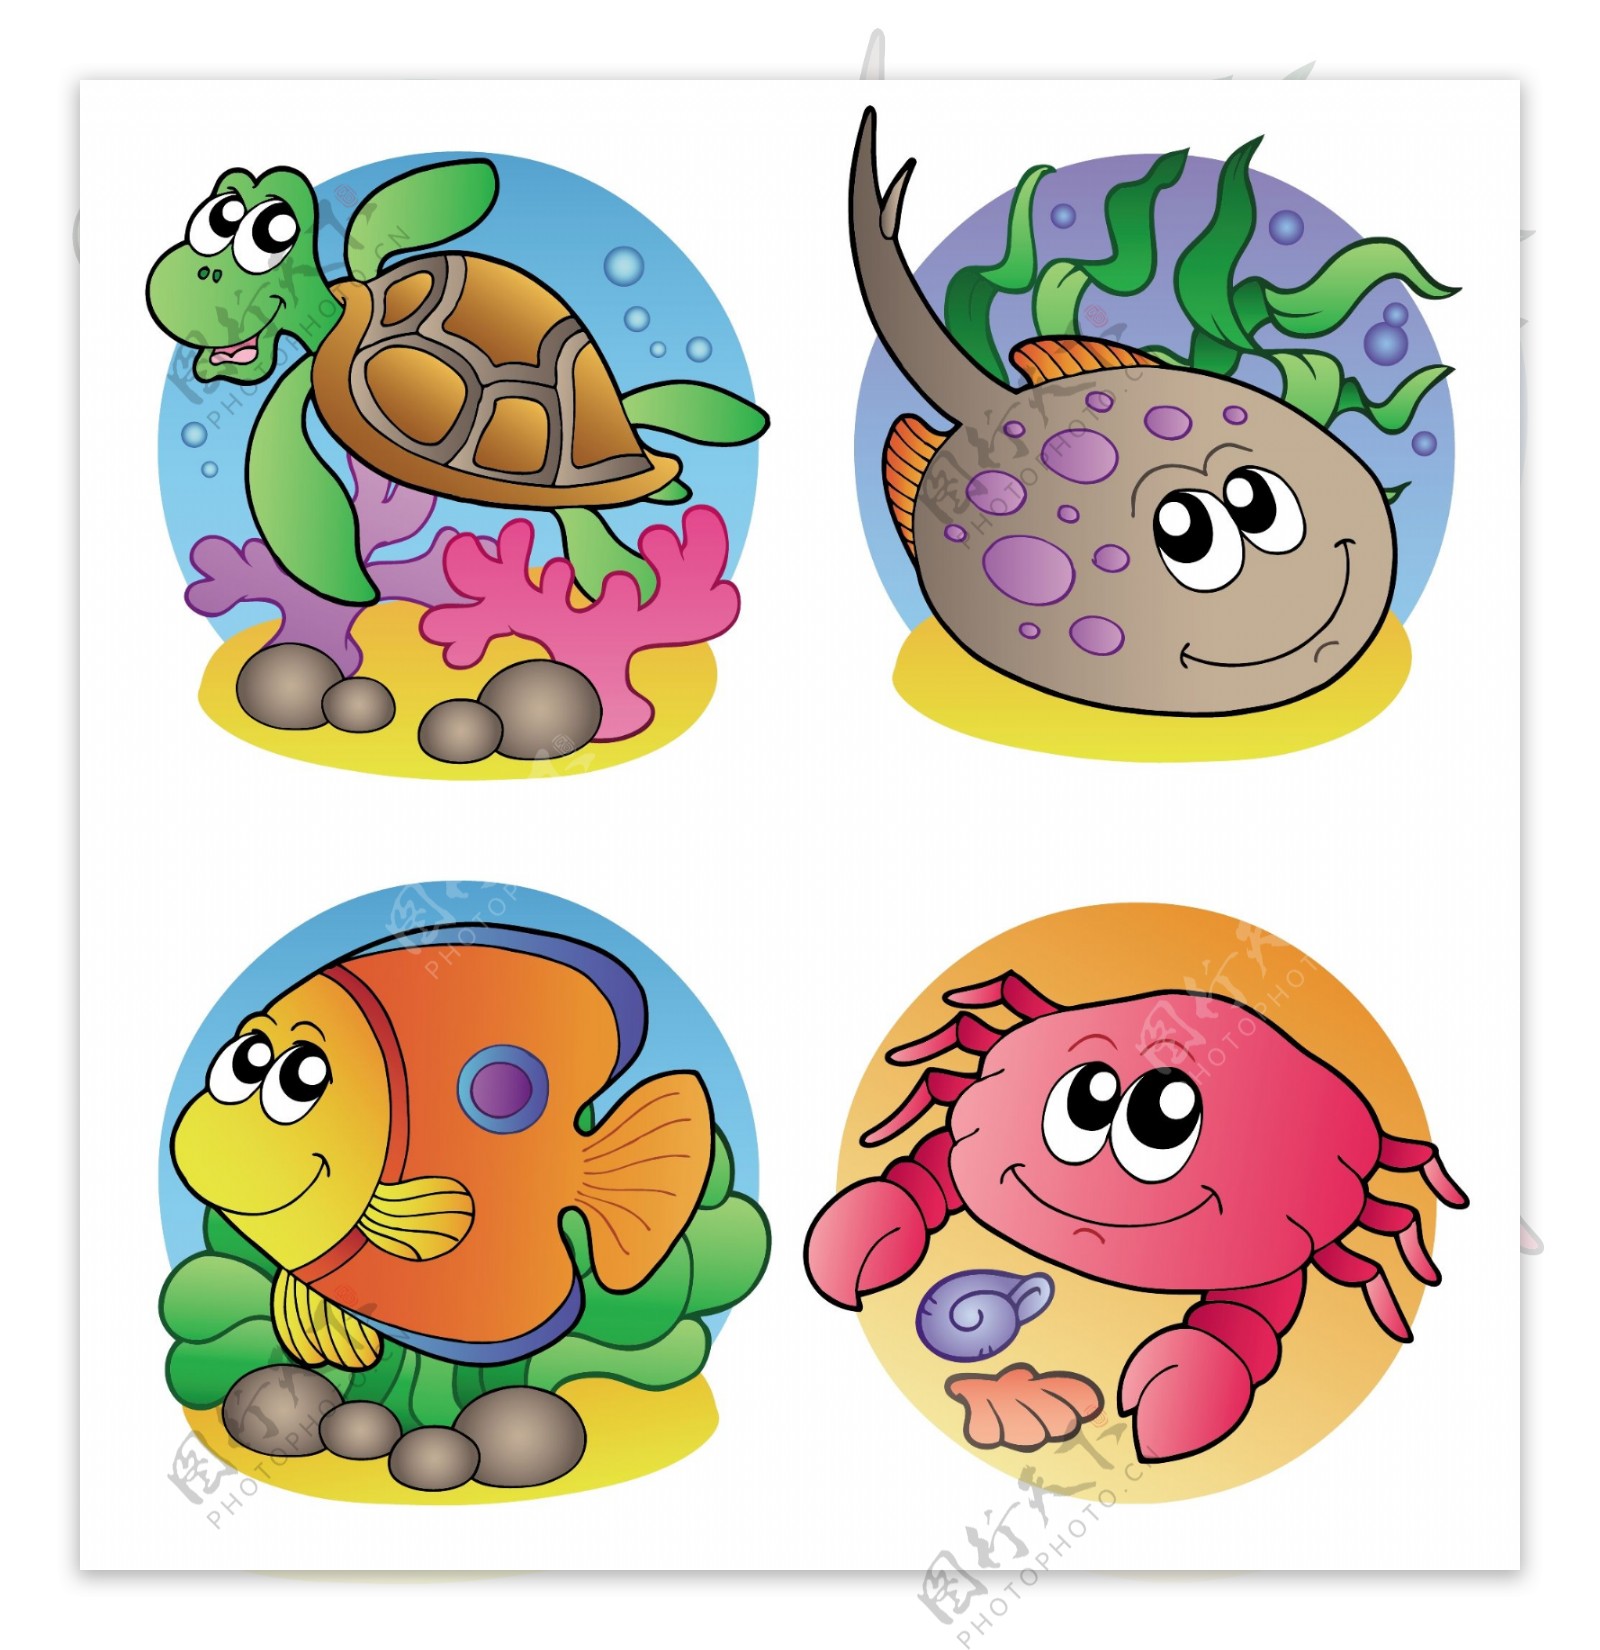 乌龟鱼和螃蟹图案矢量素材